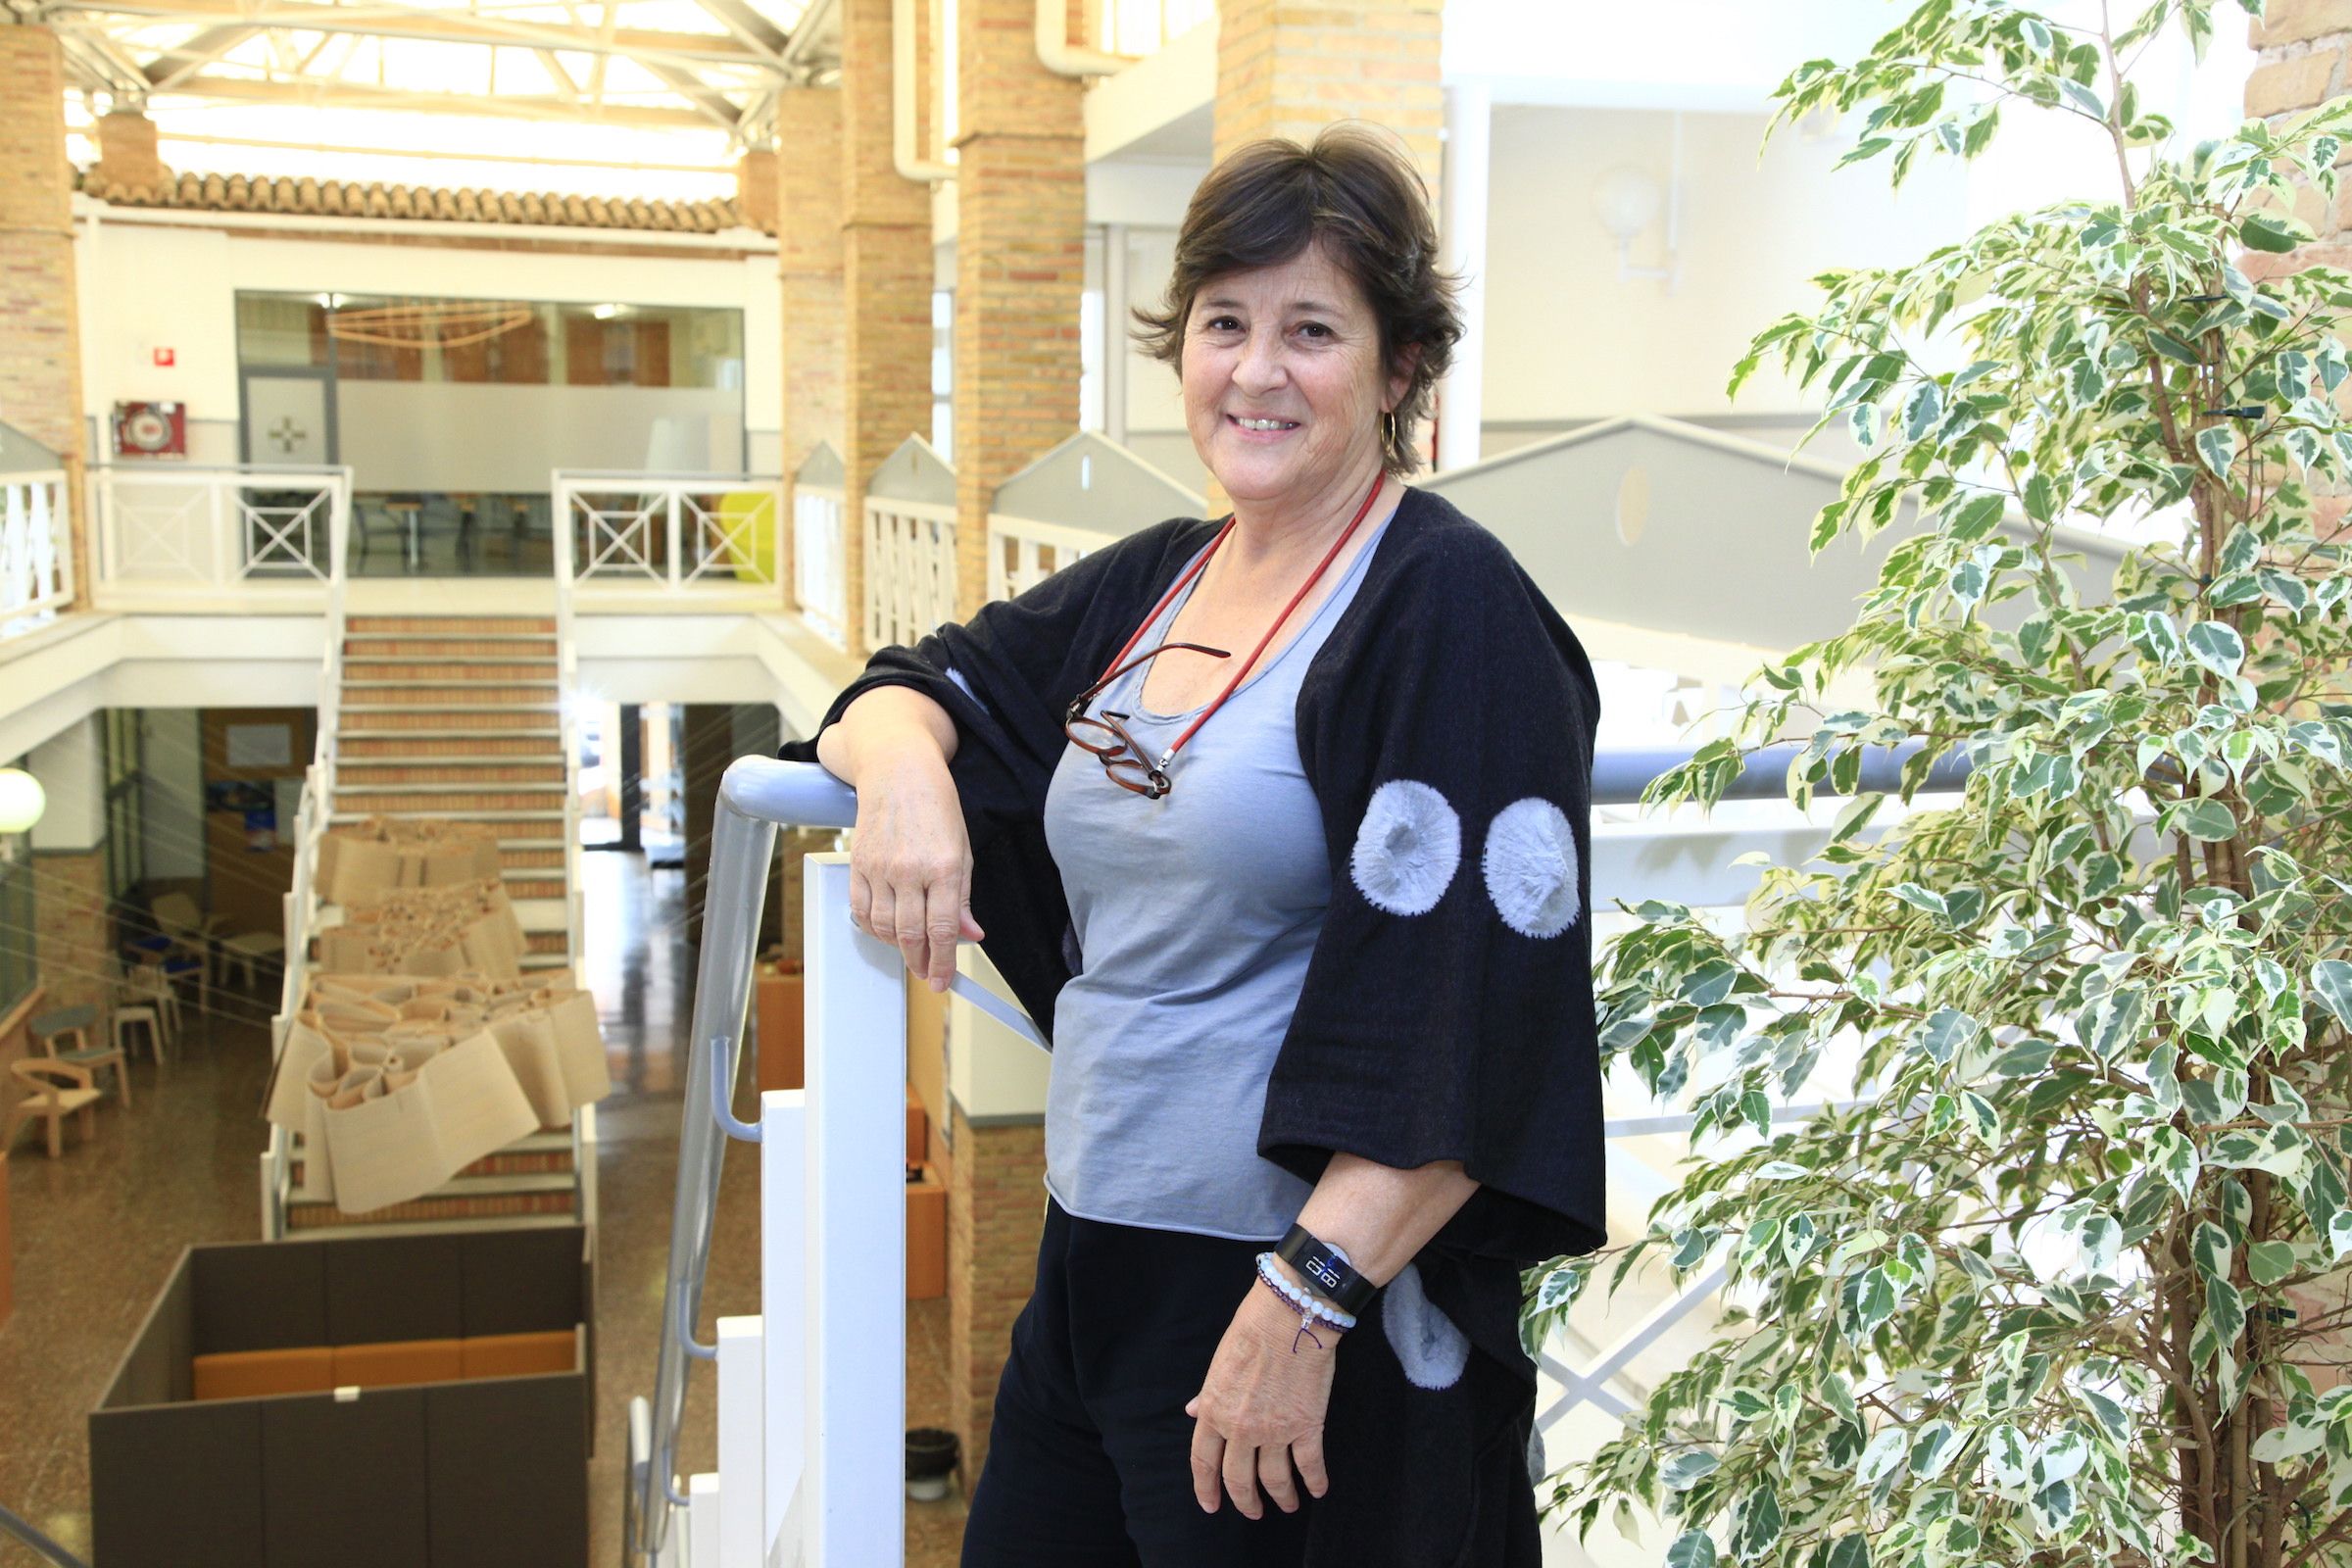 La interiorista Isabel López Vilalta es profesora del Máster en Diseño de Interiores de la CEU UCH.